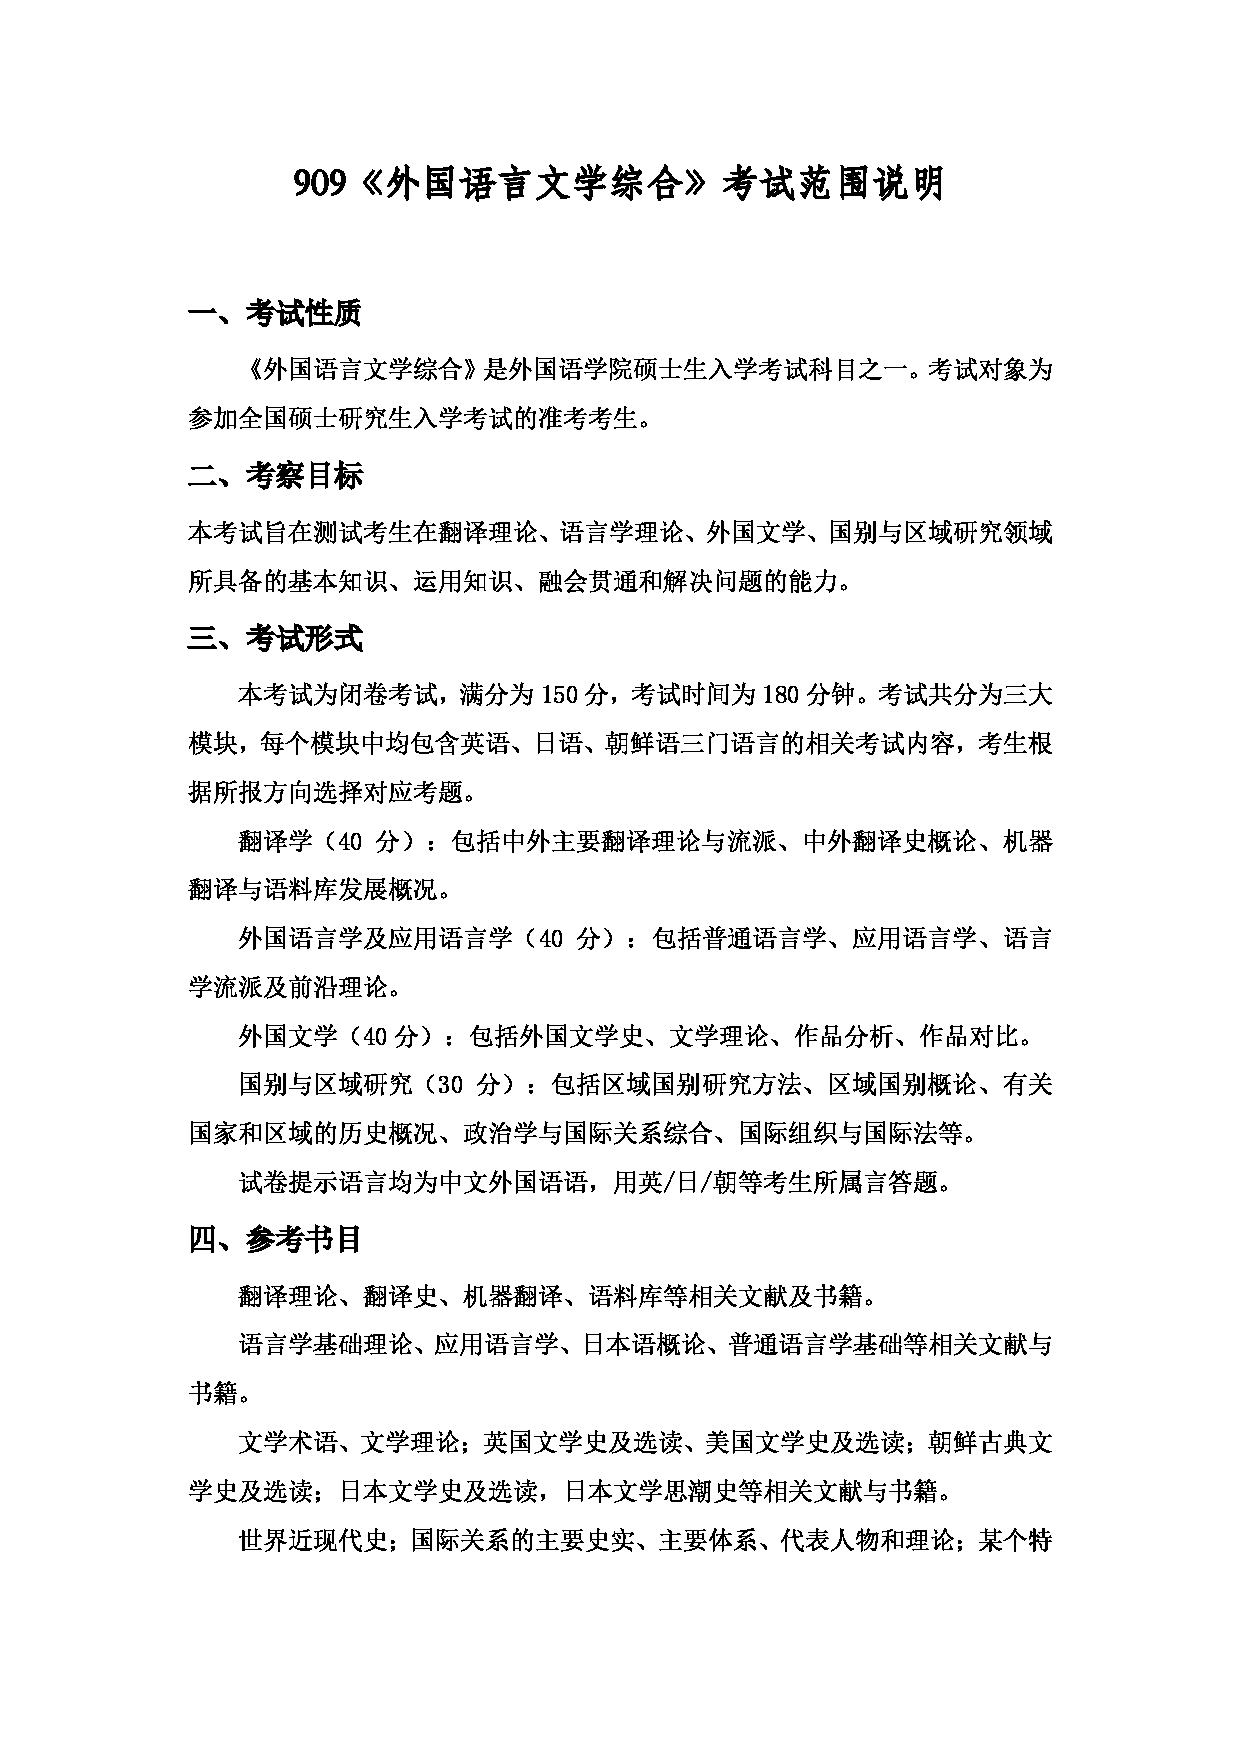 2022考研大纲：上海海洋大学2022年考研自命题科目 909外国语言文学综合 考试大纲第1页